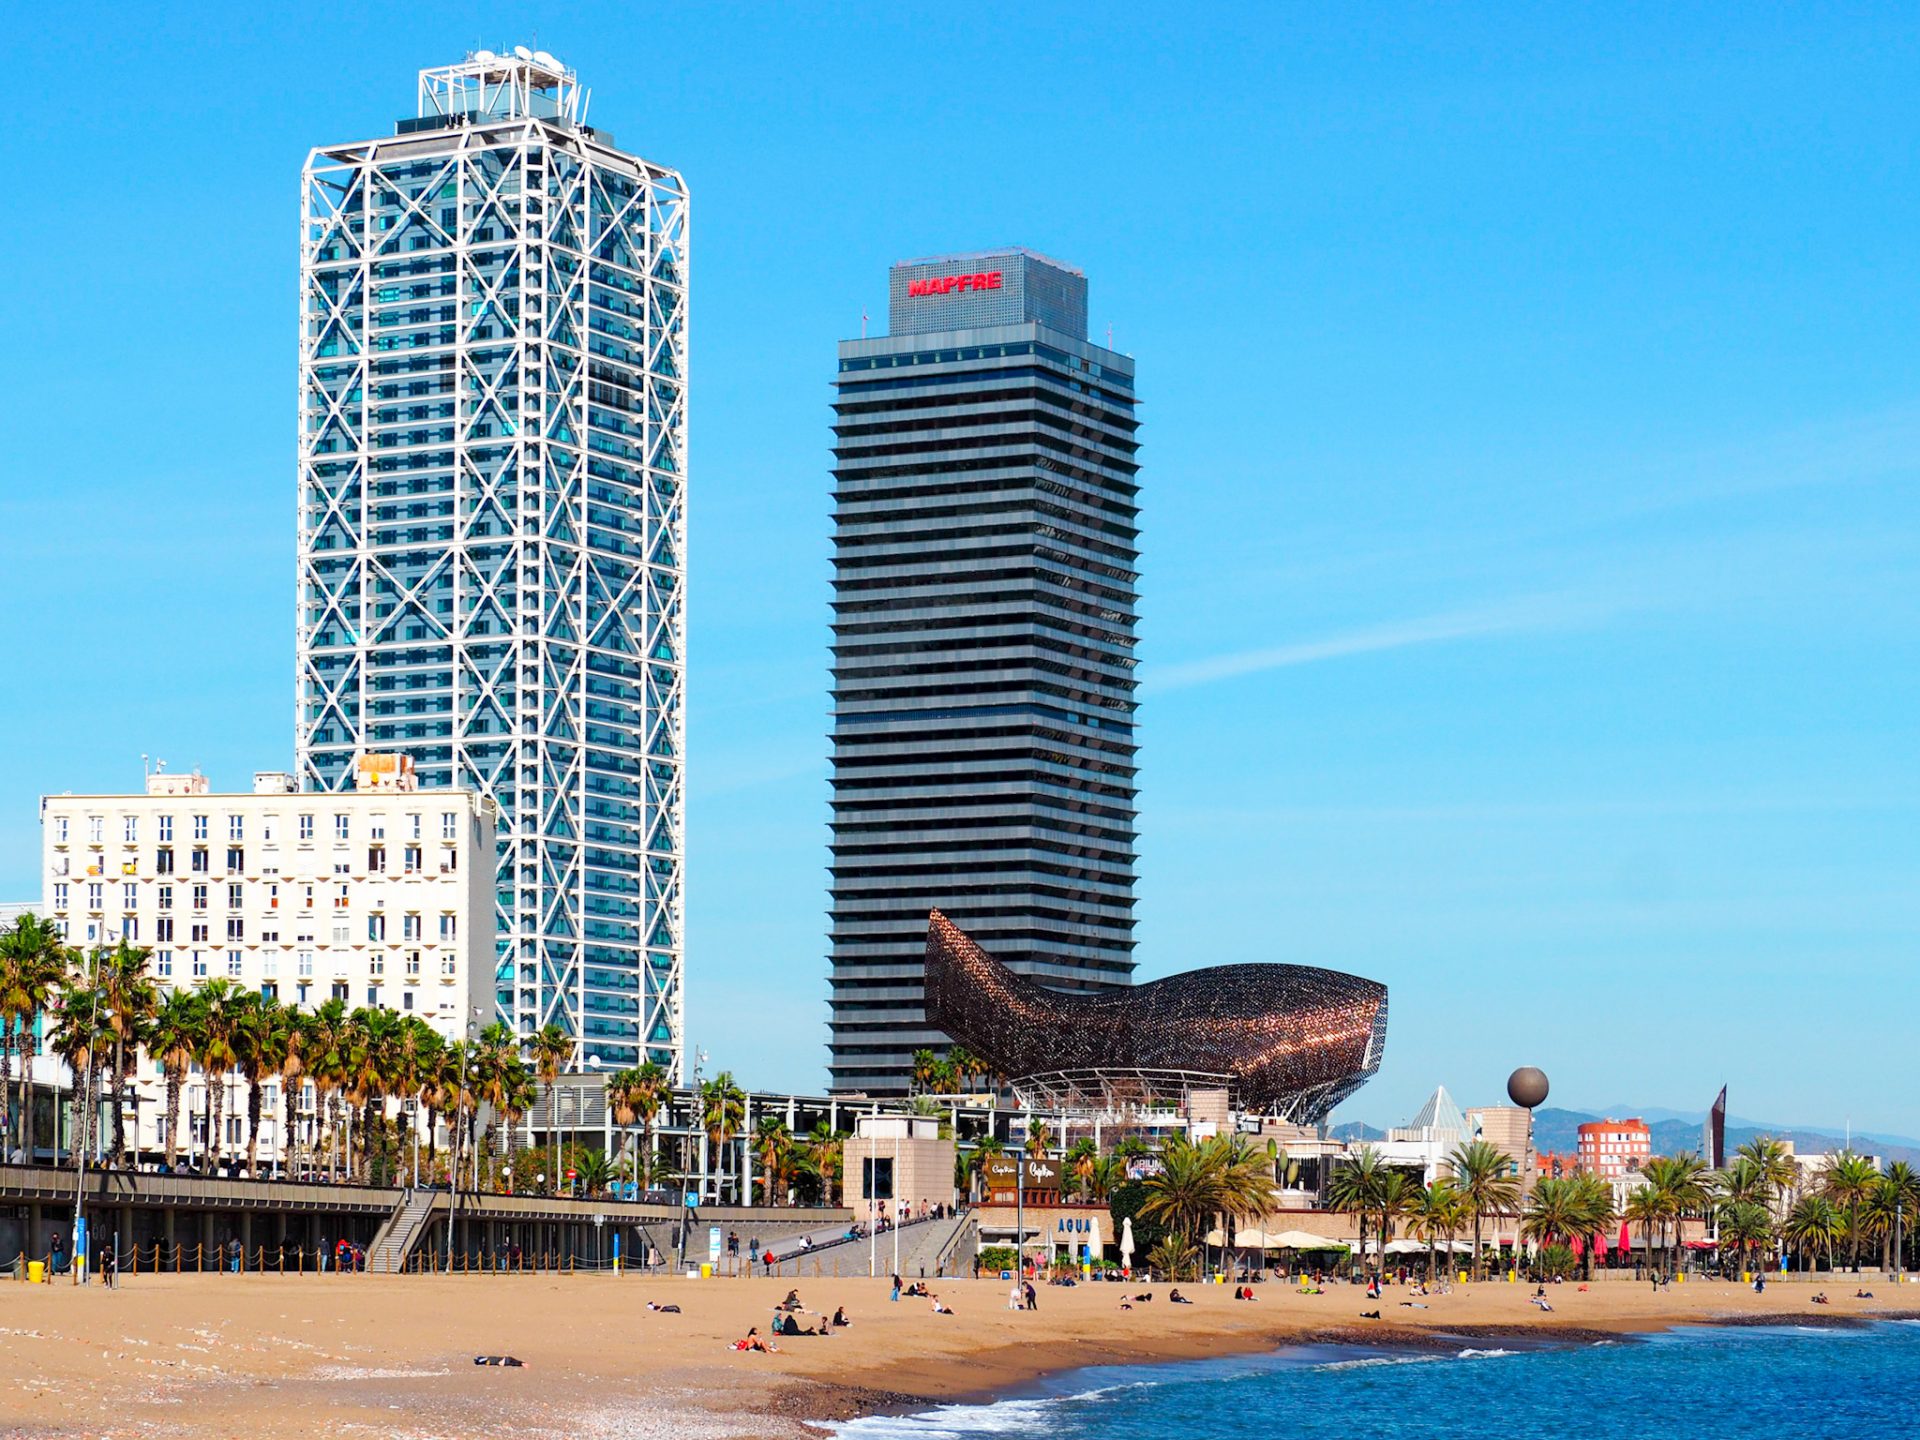 La plage de Barcelone, l'hôtel Arts et la sculpture de poisson de Frank Ghery.